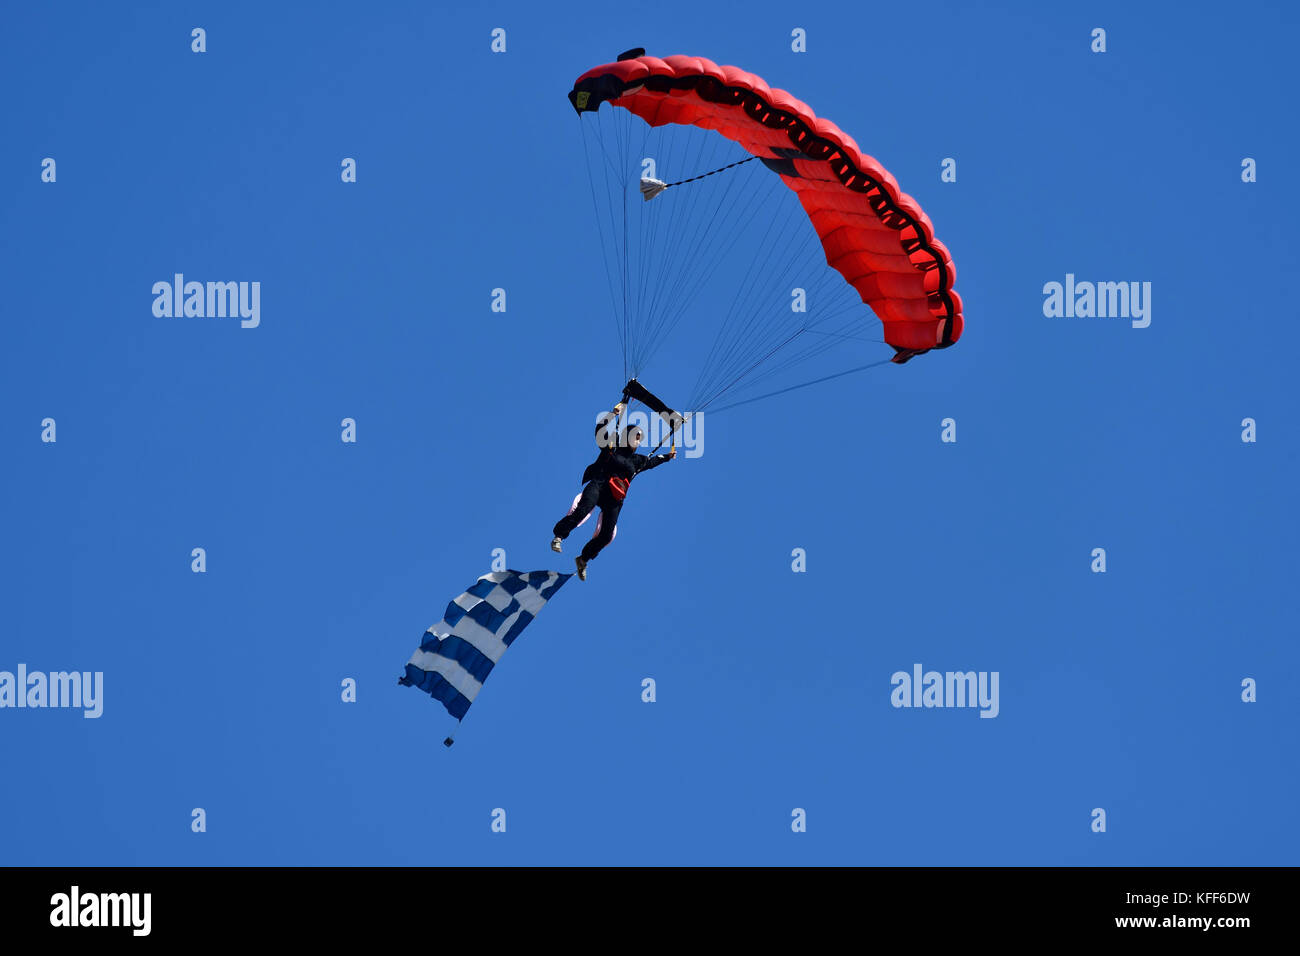 Parachuter di hellenic skydivers durante il volo atene settimana 2017 air-show di tanagra Air Force Base in Grecia Foto Stock